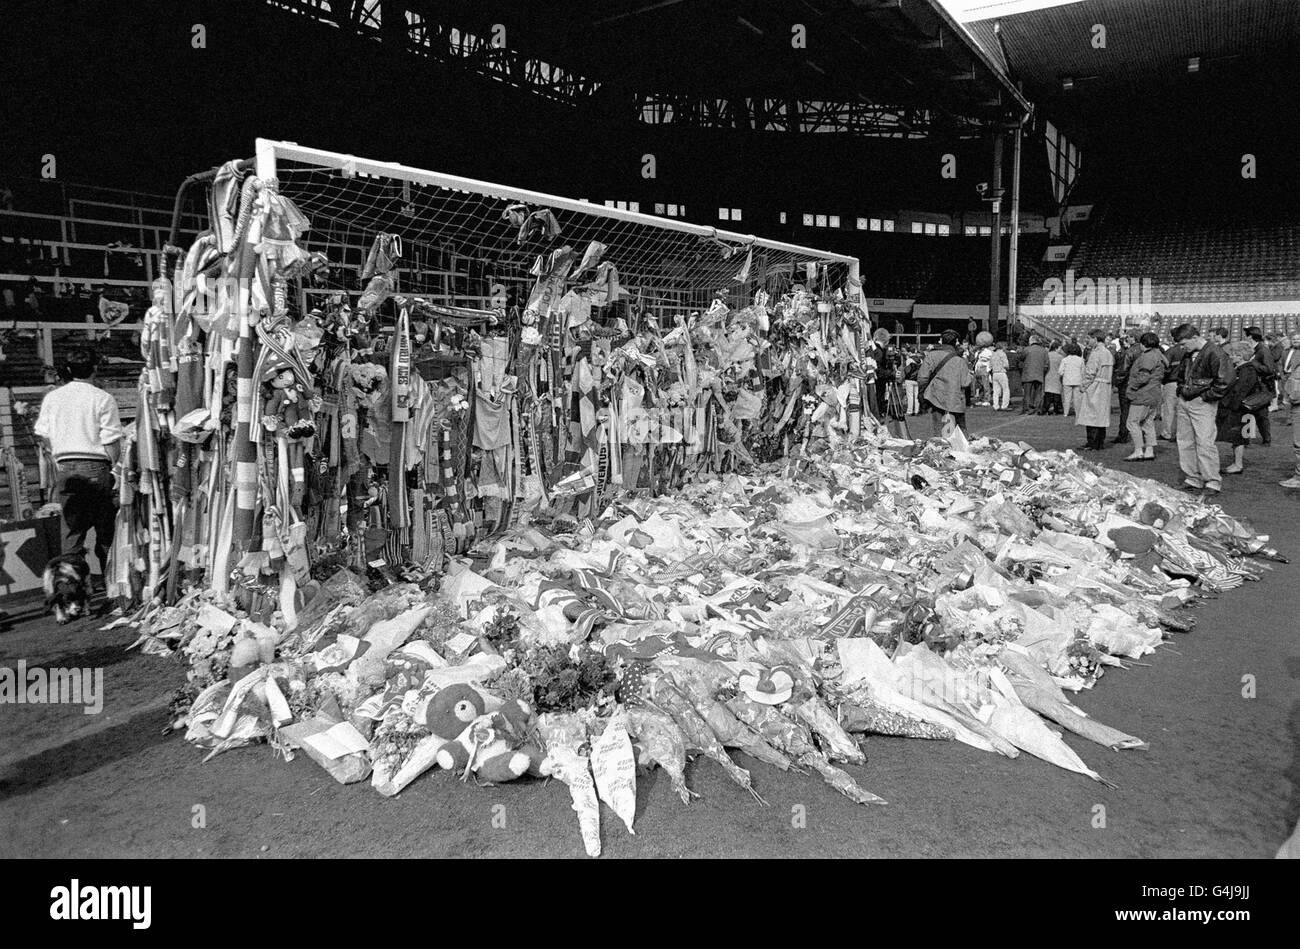 Gli omaggi sono stati deposti ad Anfield, in memoria di coloro che sono morti al disastro di Hillsborough, durante una partita di calcio semifinale della fa Cup tra Liverpool e Nottingham Forest. Il 15/04/99 Liverpool celebrerà il decimo anniversario di Hillsborough (13/04/99). * 96 persone sono morte e 170 sono state ferite nel disastro di Hillsborough. I morti saranno onorati al 10° anniversario con un tradizionale servizio commemorativo allo stadio di calcio Liverpool, Anfield. Foto Stock